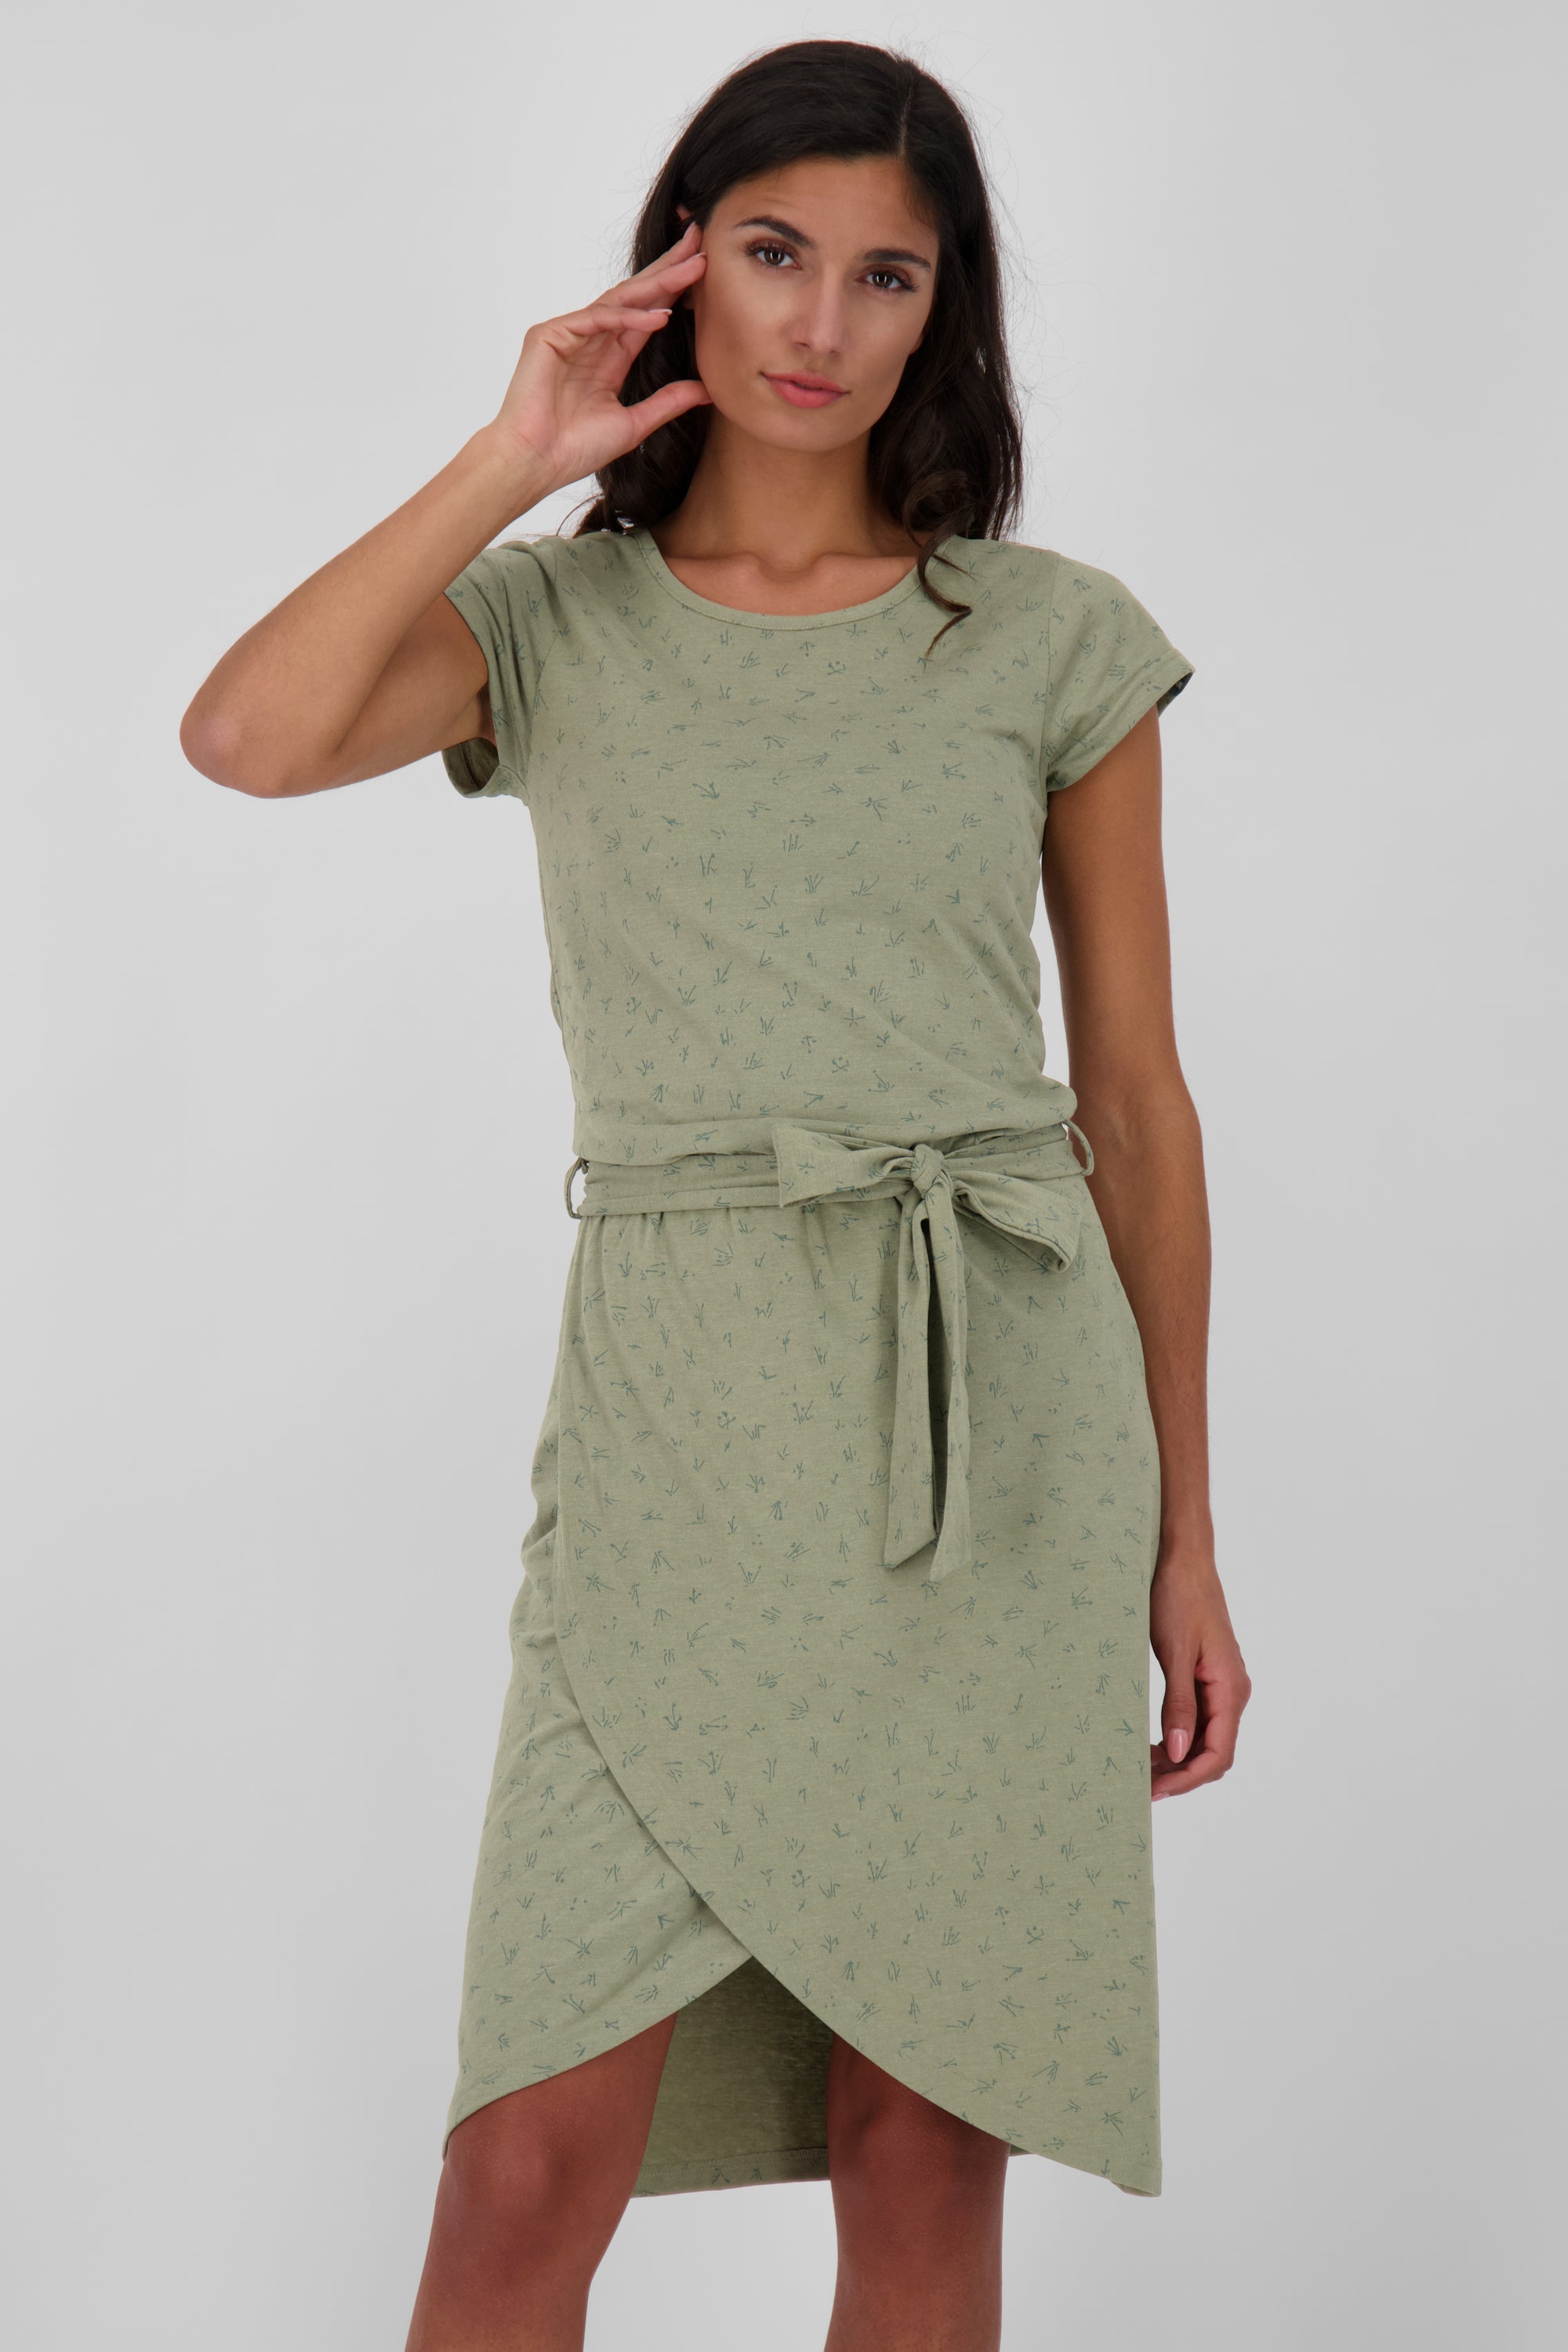 TheaAK Damenkleid mit Allover-Print für den perfekten Sommer-Look Grün